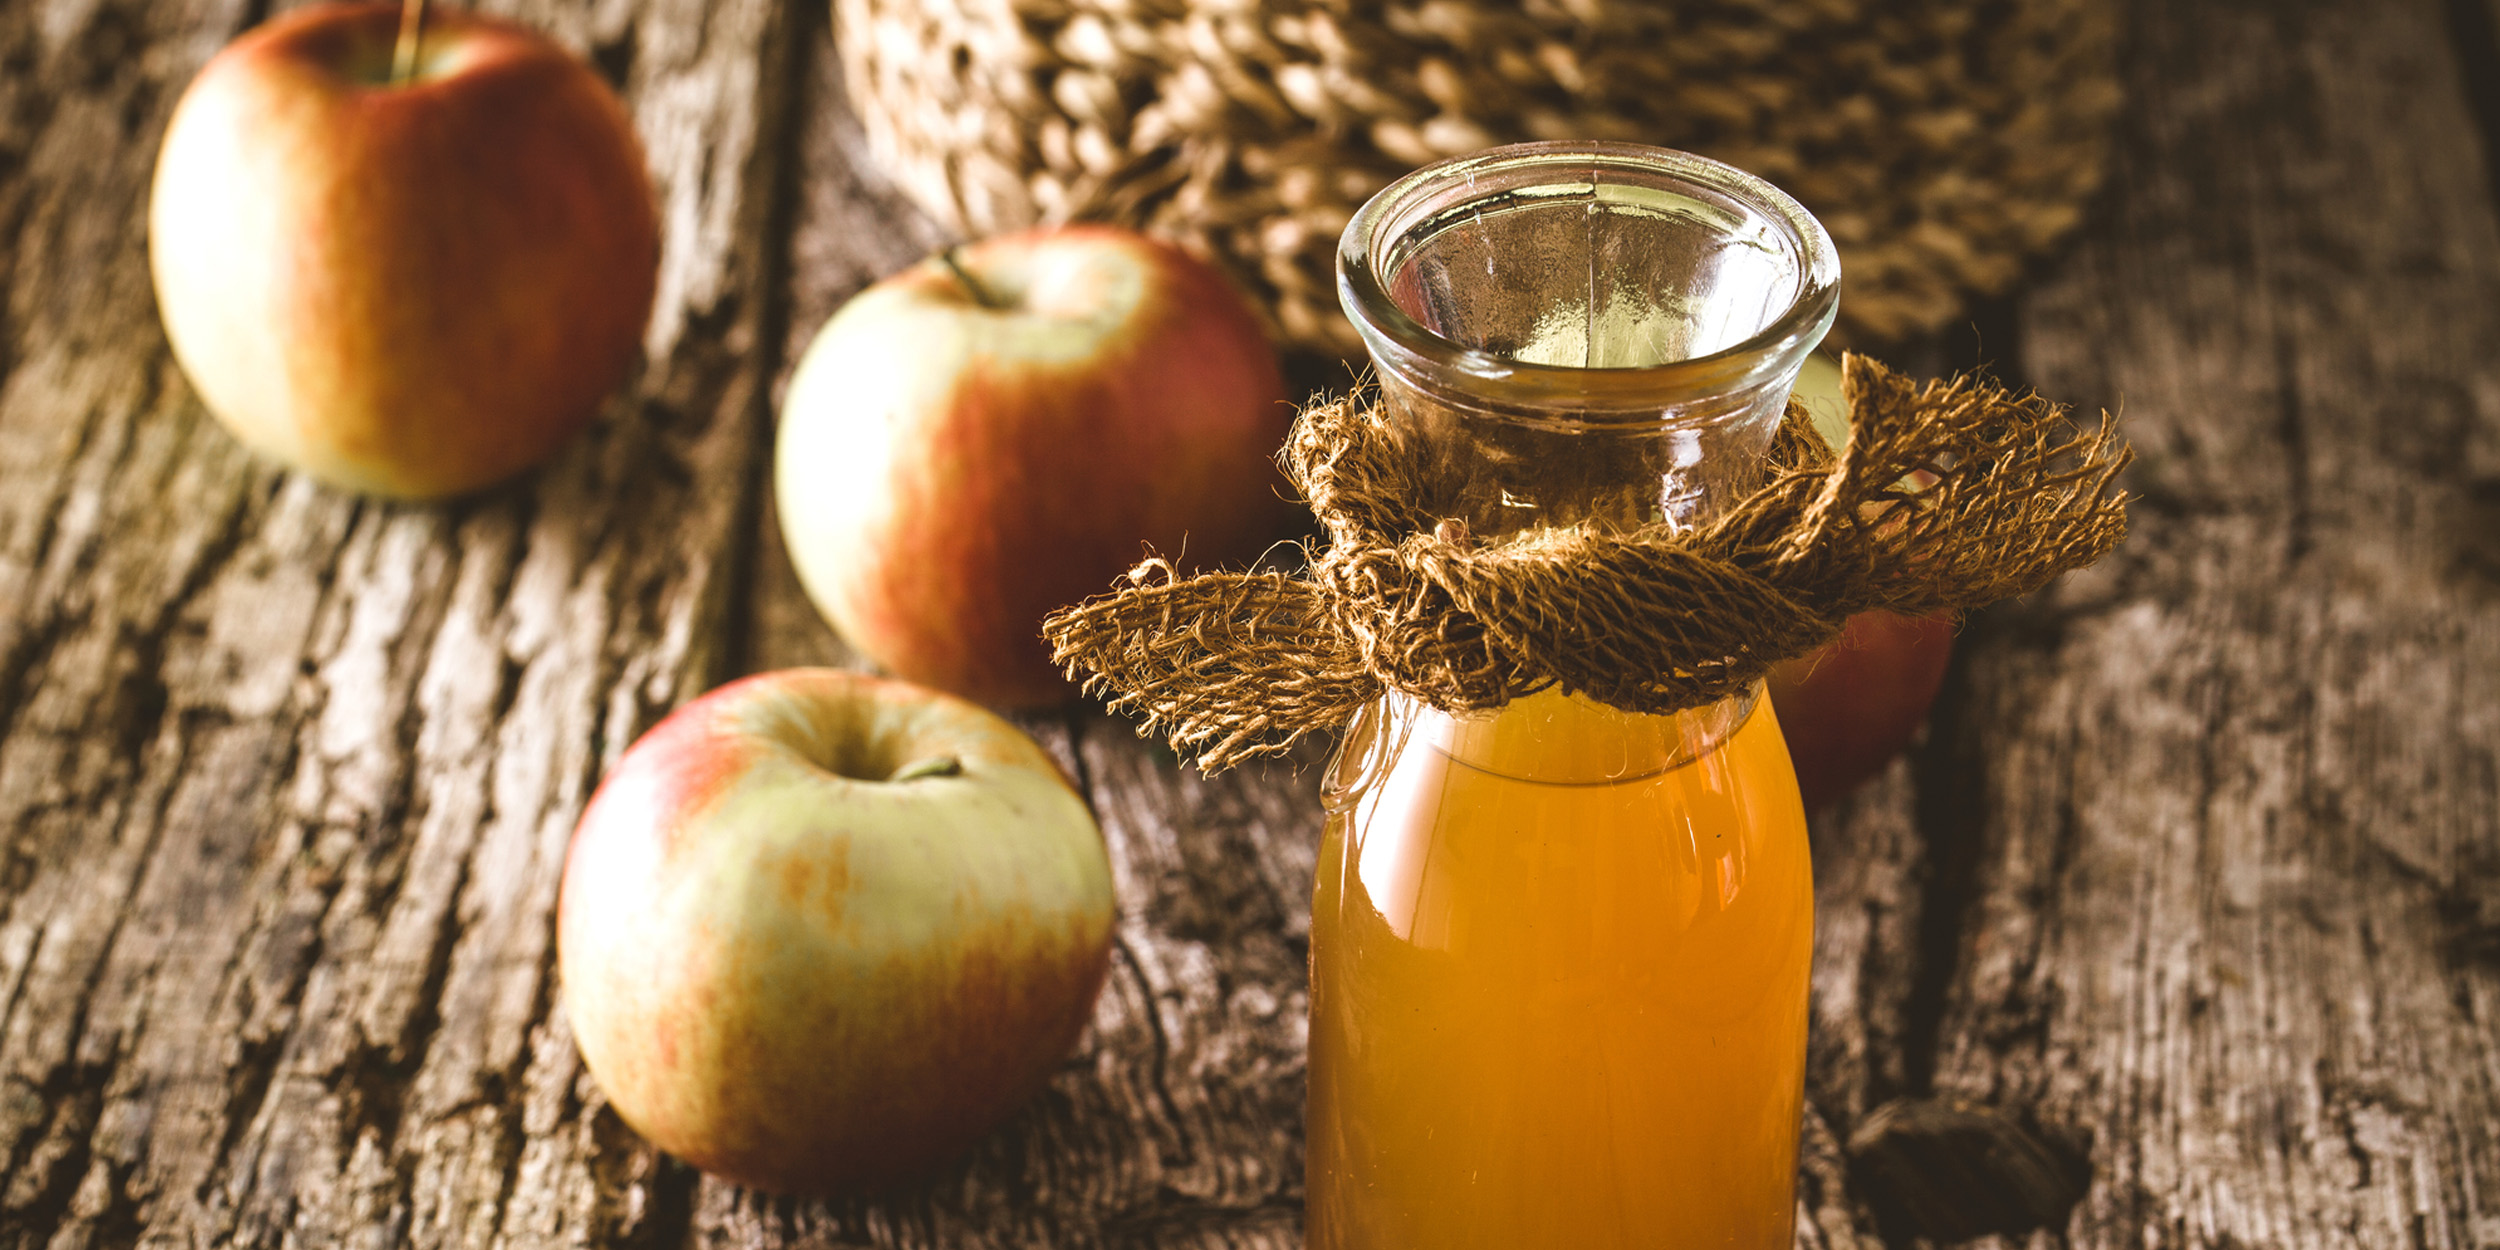 Домашний сидр из яблок рецепт и технология приготовления яблочного сидра в домашних условиях